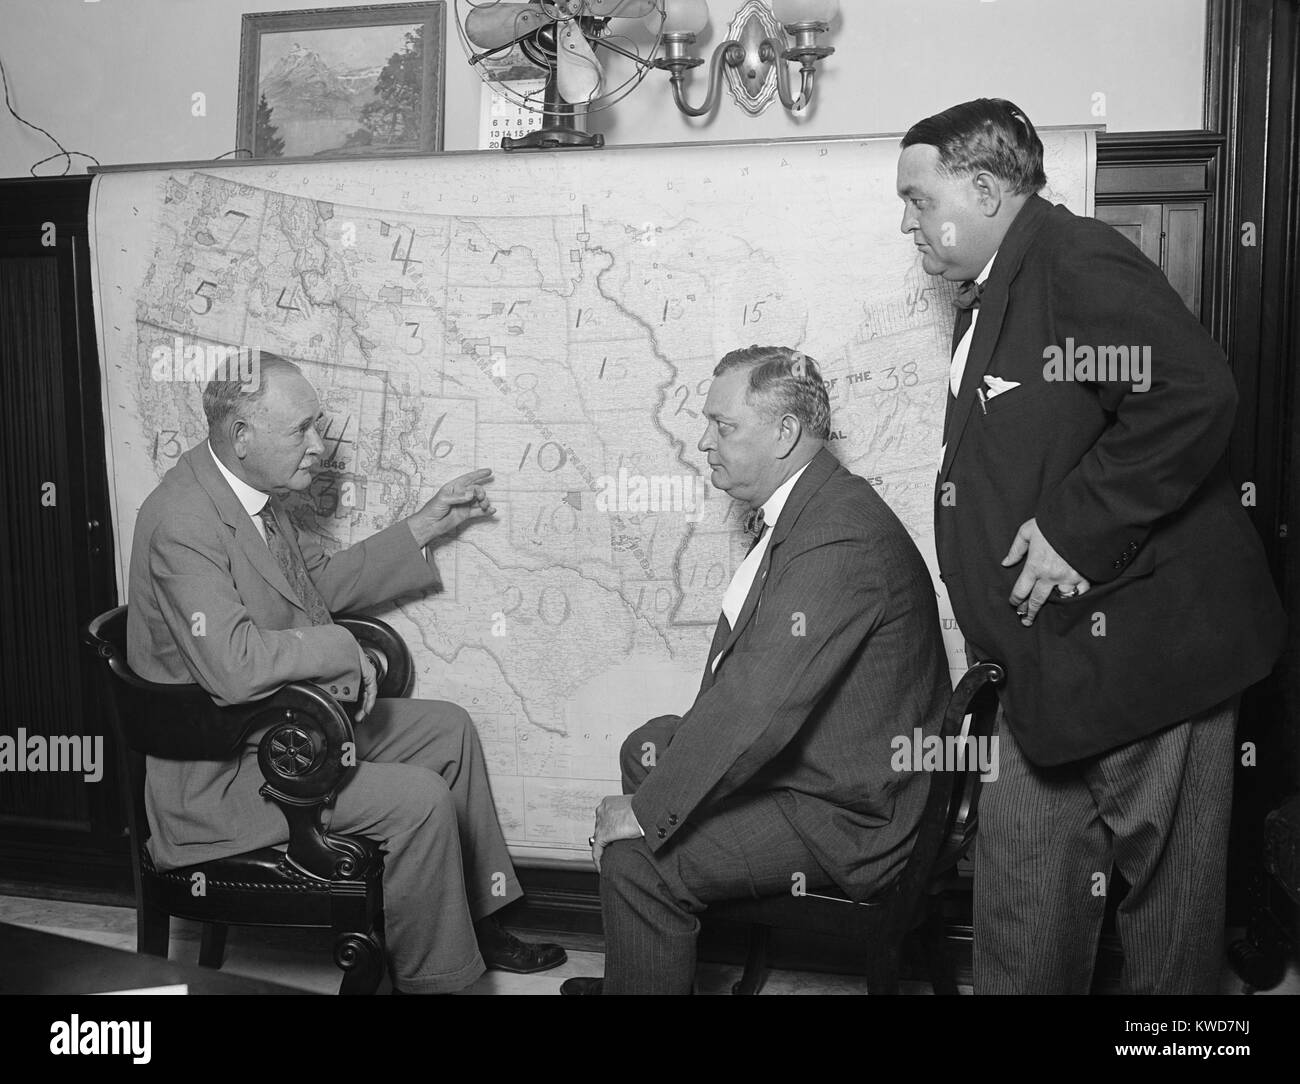 1924 democratica campagna senatoriale Comitato a una mappa. In Coolidge frana, i Democratici perso quattro seggi in Senato, e rimase il partito della minoranza con 41 posti a sedere per il 54 dei democratici. (BSLOC 2015 16 113) Foto Stock